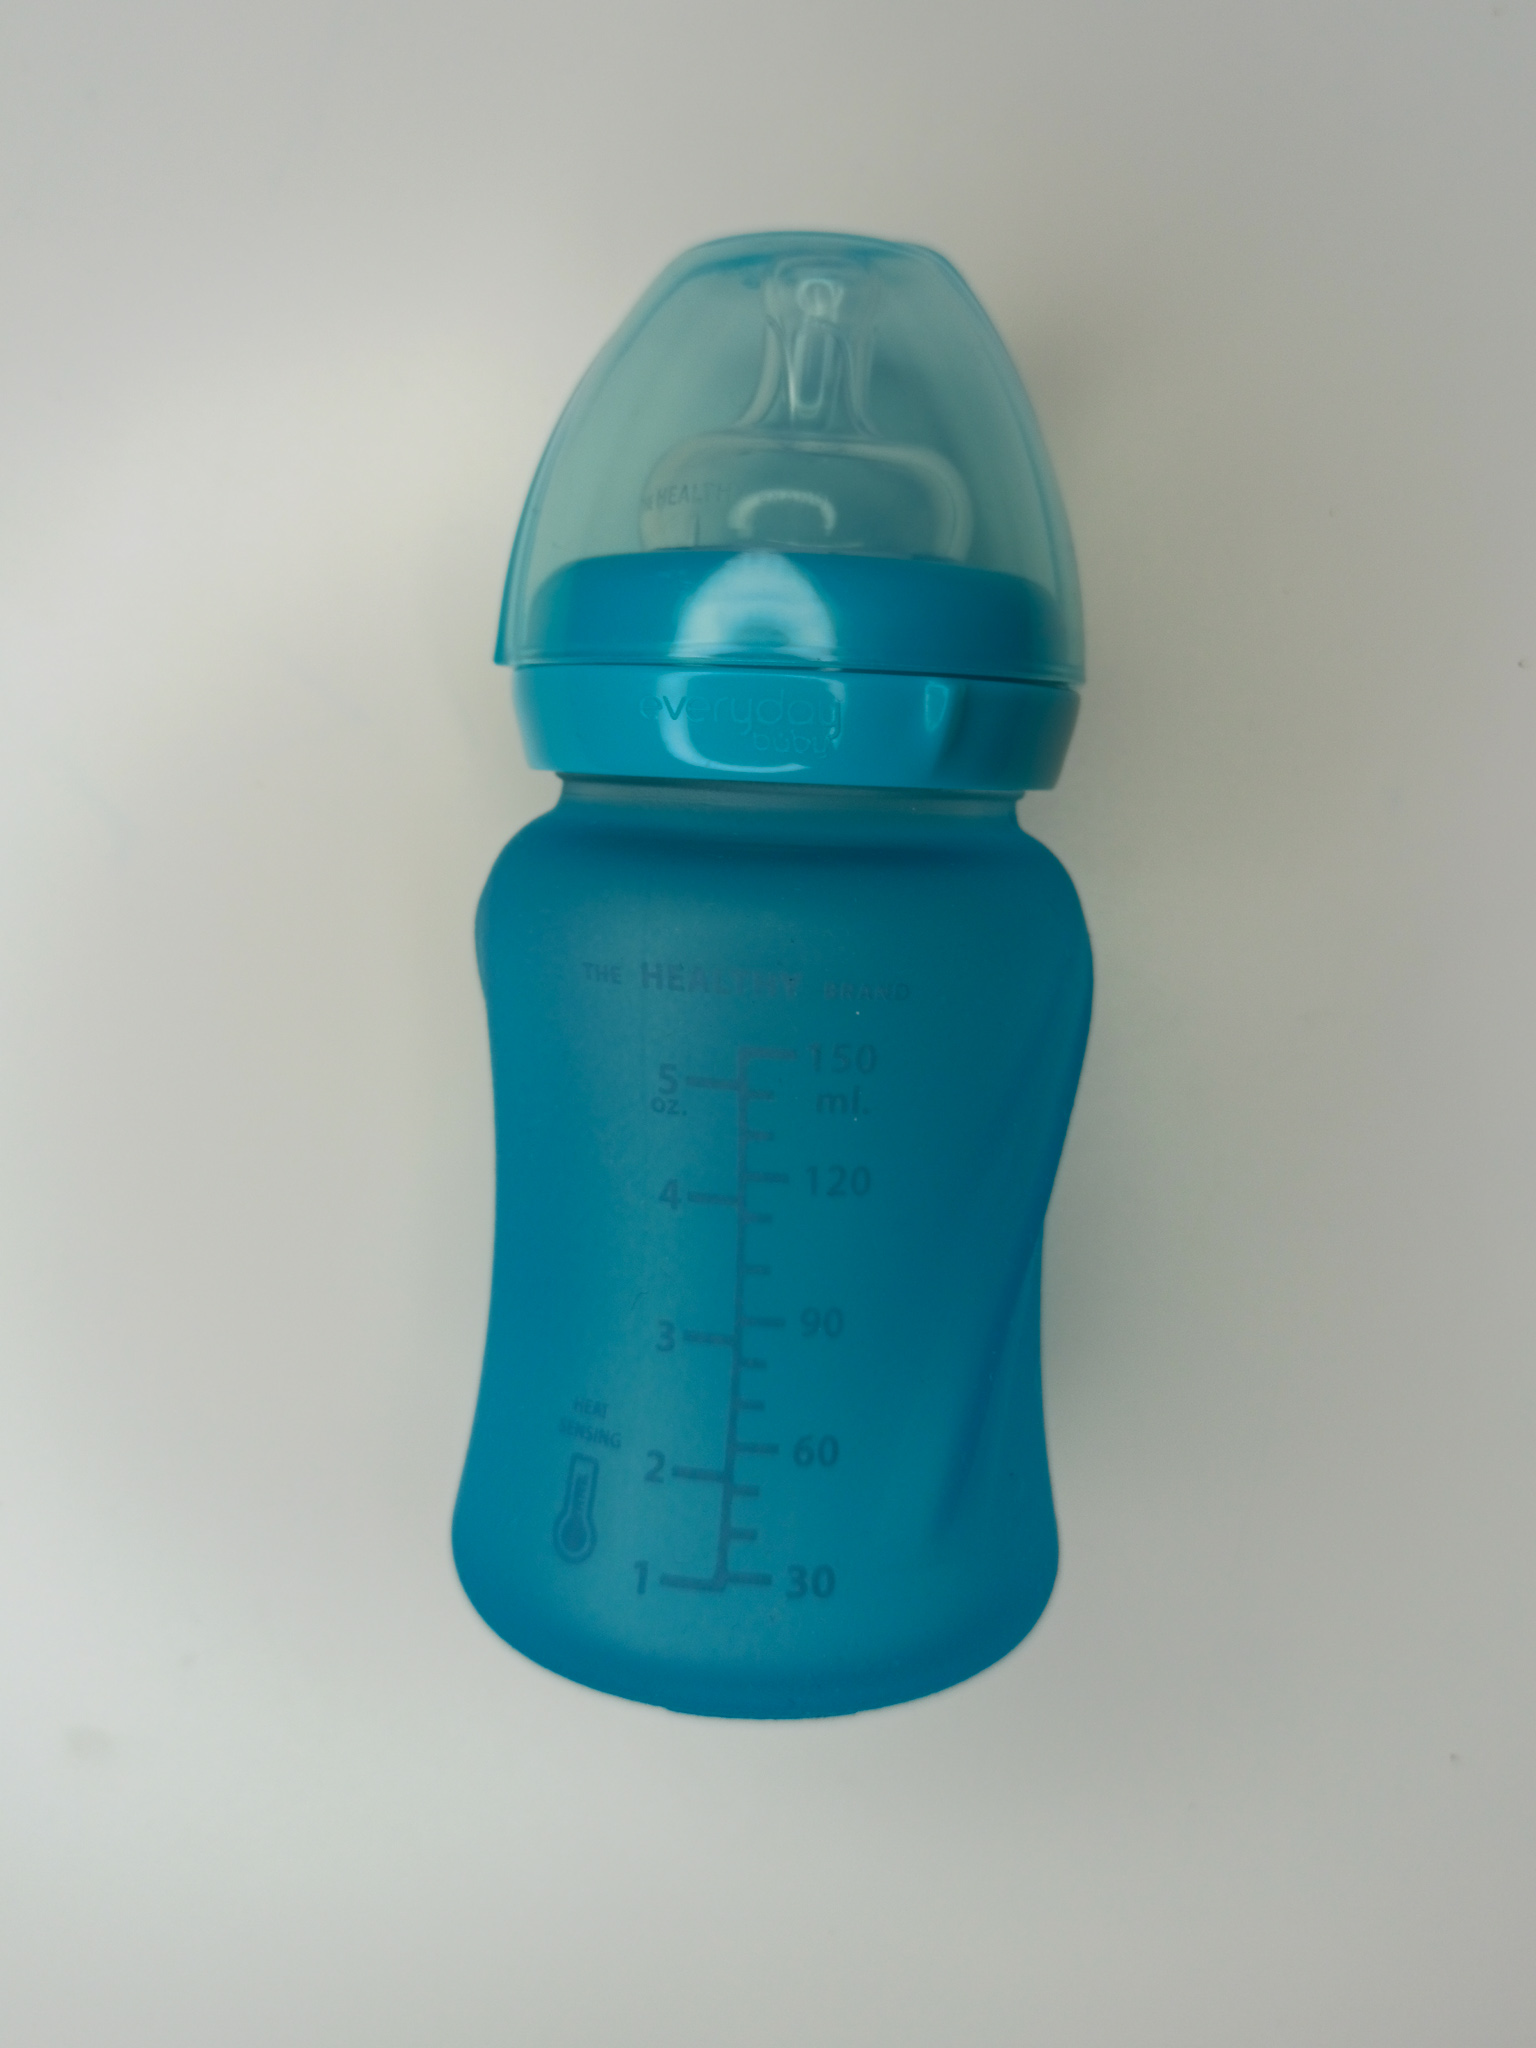 butelka zmieniająca kolor pod wpływem temperatury